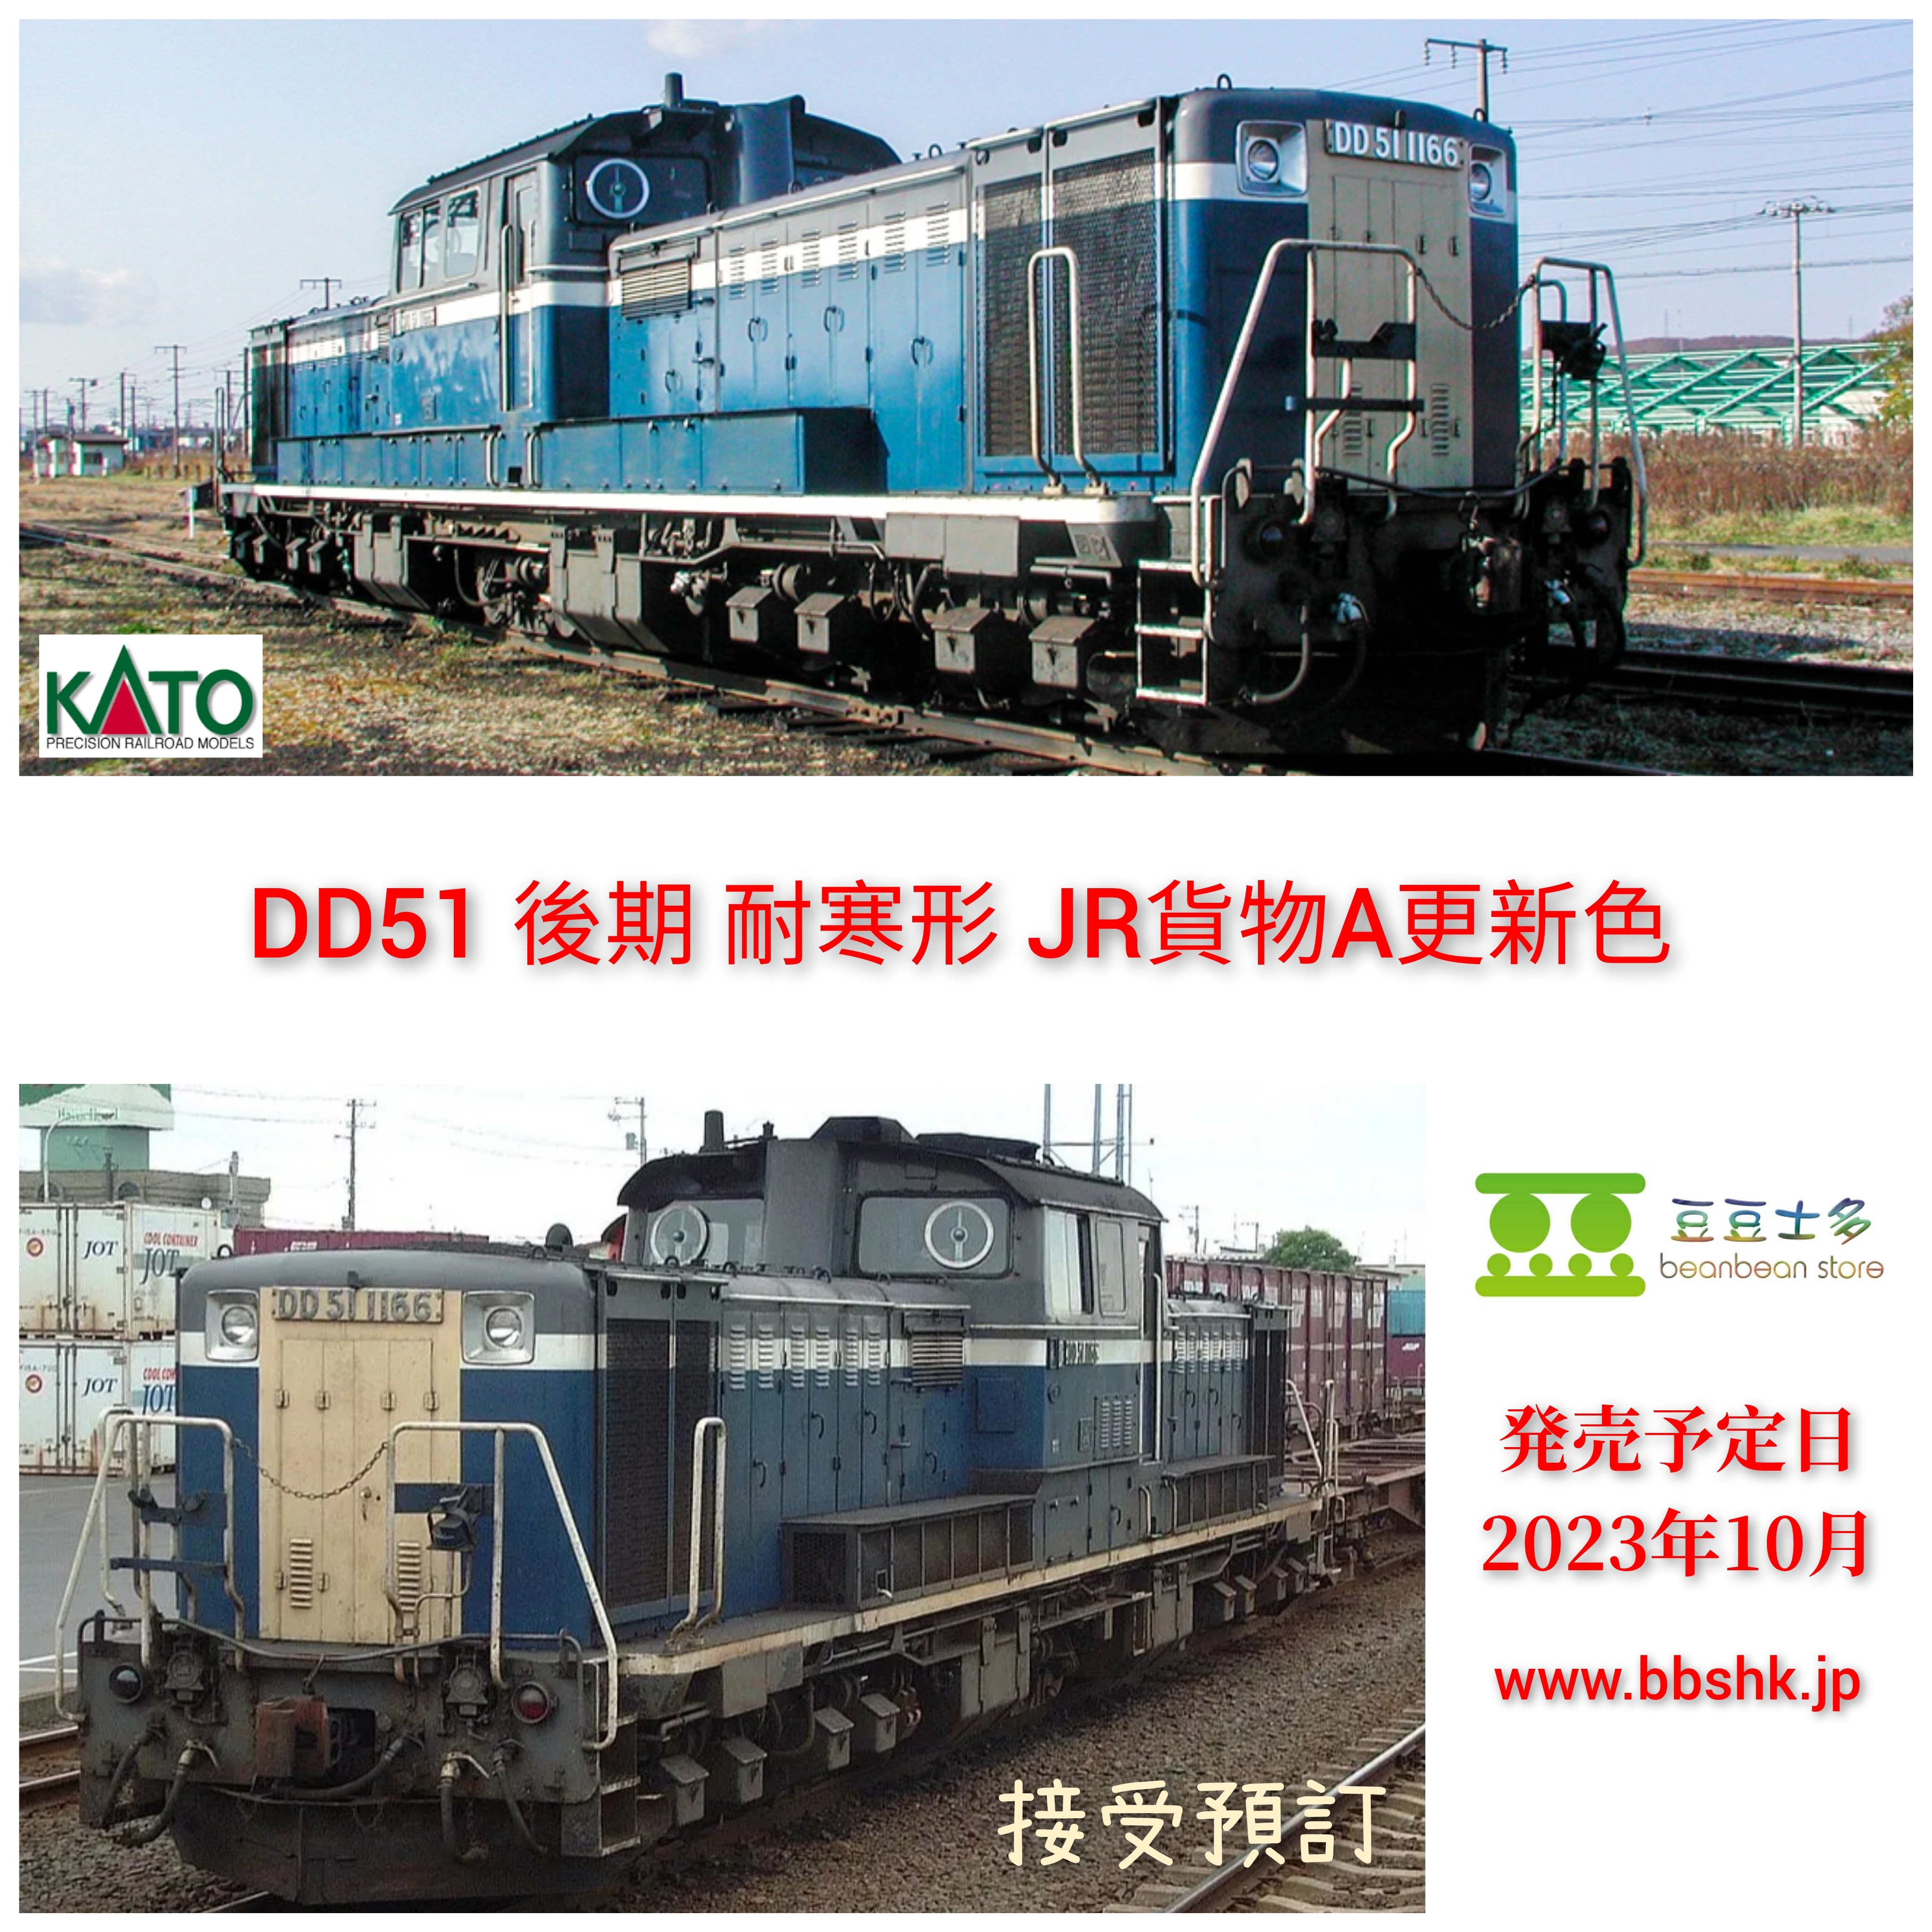 カトー (N) 7008-J DD51 後期 耐寒形 JR貨物A更新色 返品種別B - 鉄道模型